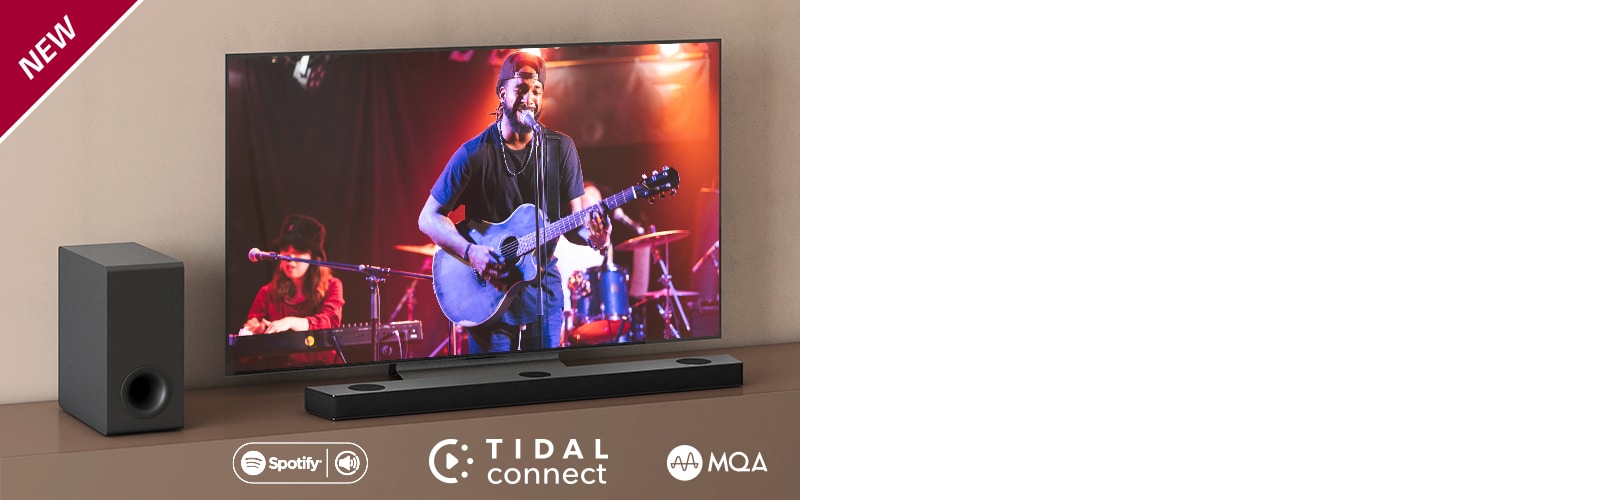 LG TV on asetettu ruskealle hyllylle, ja LG Sound Bar S90QY on asetettu TV:n eteen. Subwoofer on asetettu TV:n vasemmalle puolelle. Televisiossa näkyy konserttinäkymä. UUSI-merkki näkyy vasemmassa yläkulmassa.